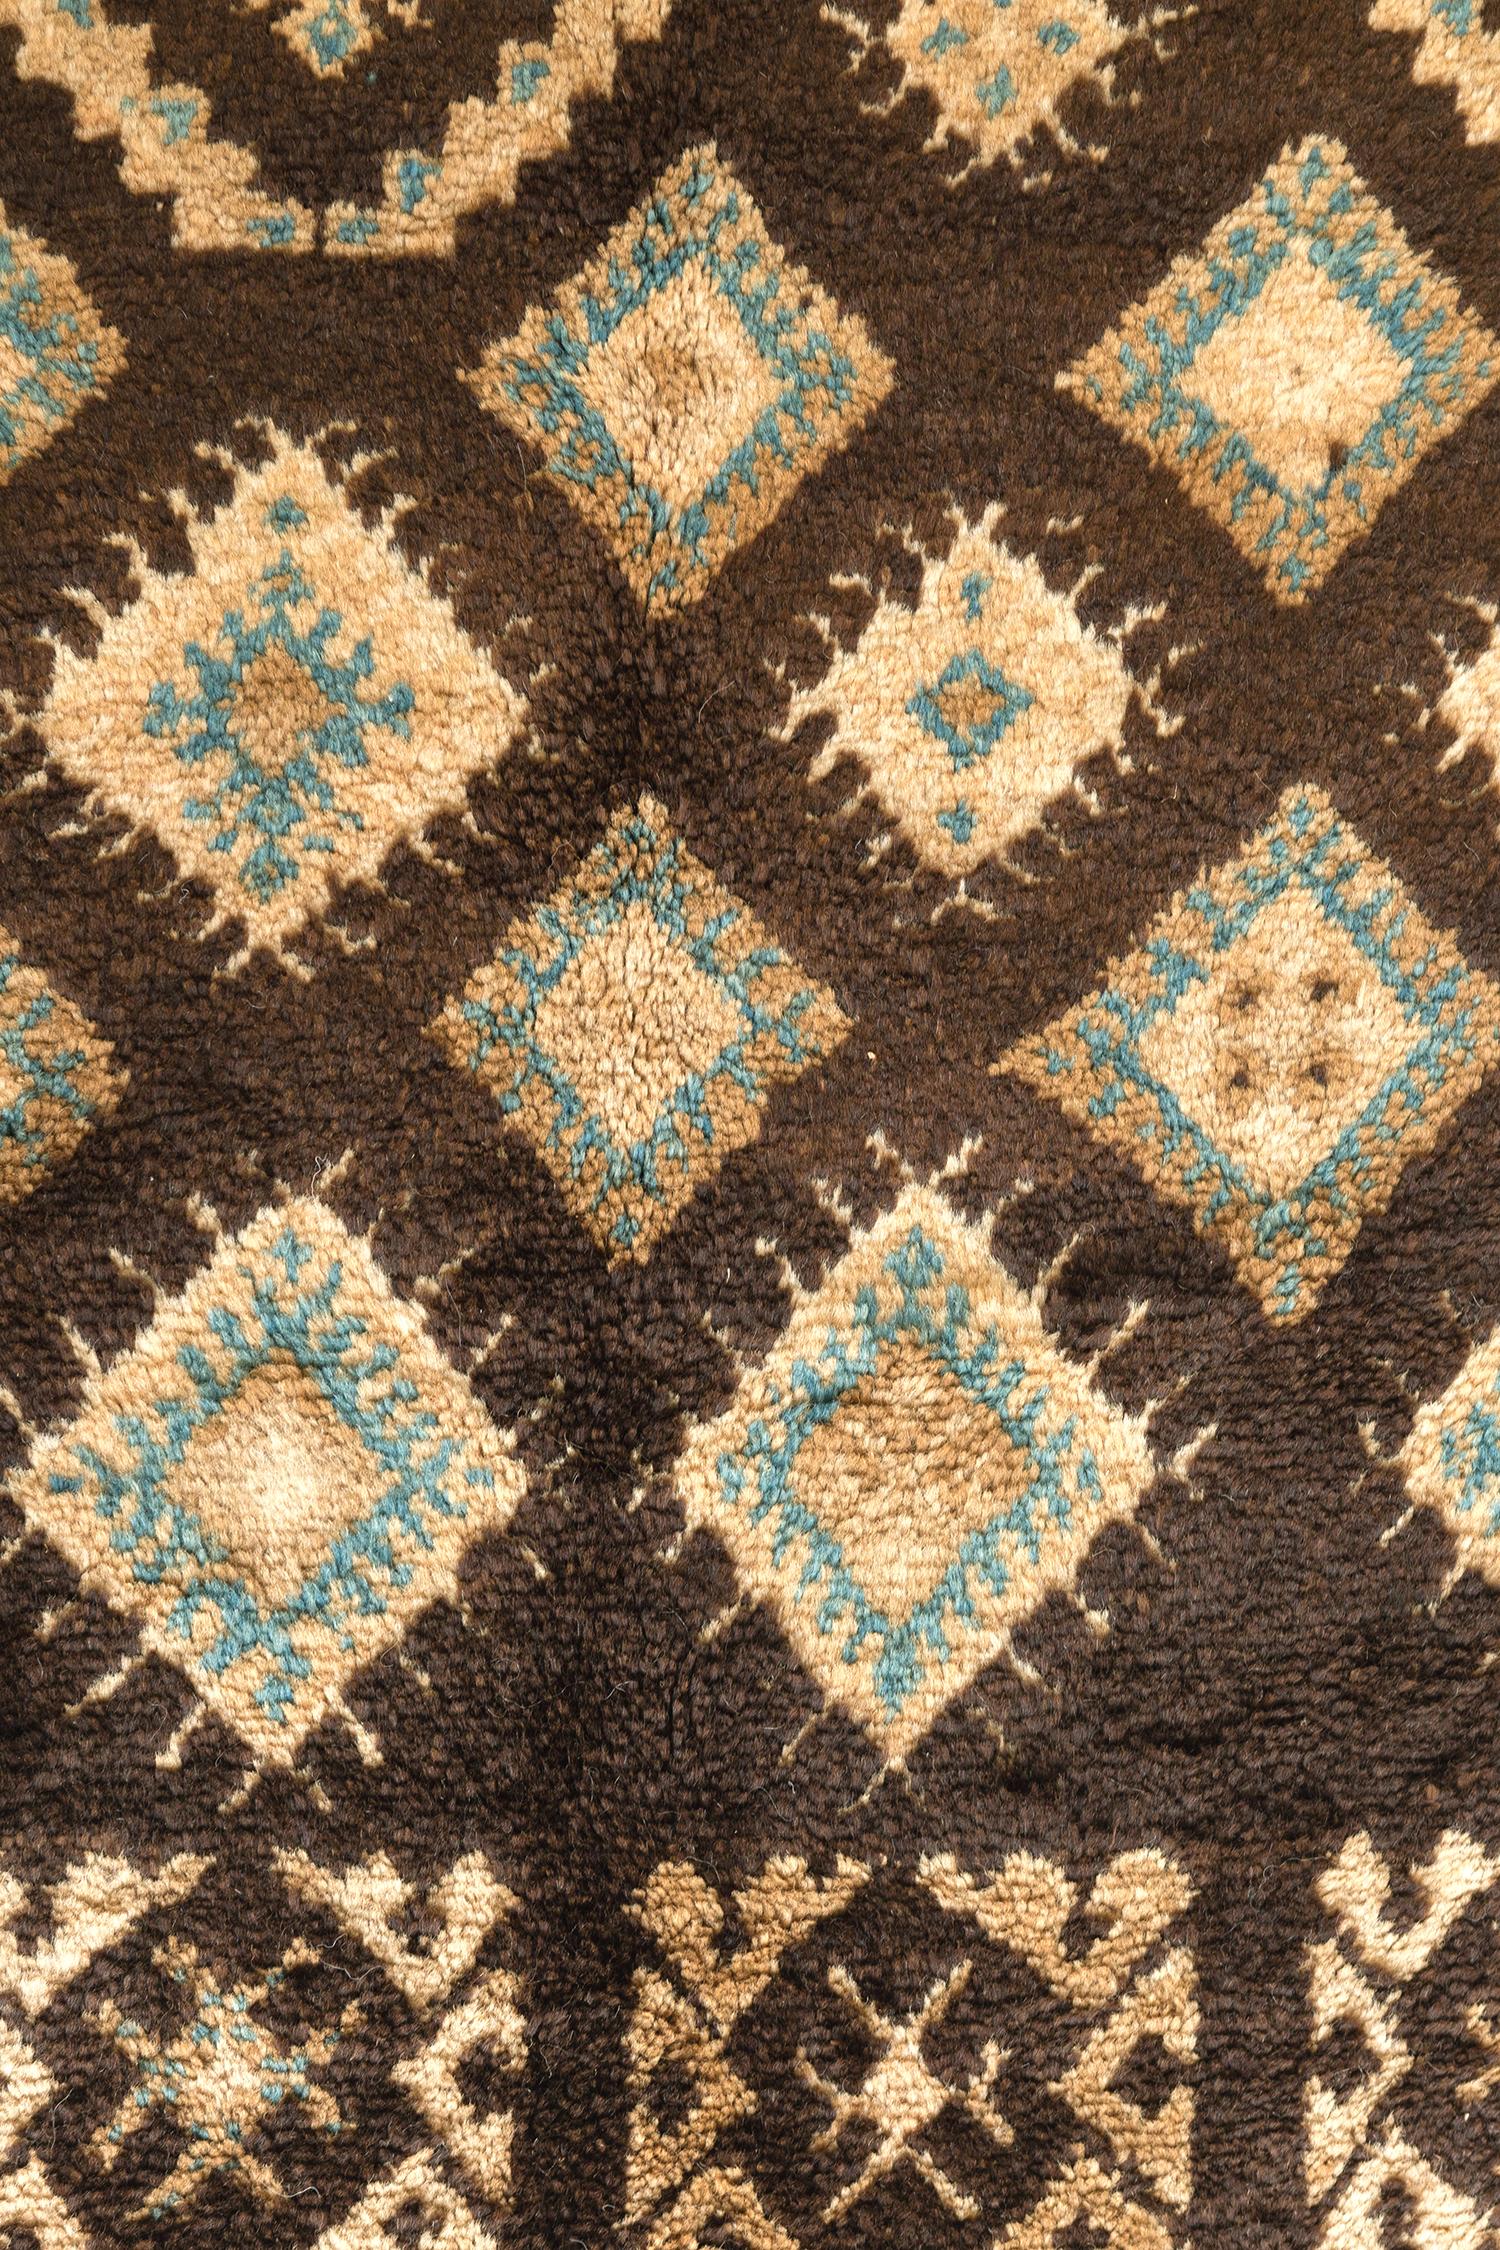 Ein majestätischer Vintage-Teppich aus dem marokkanischen Hochatlas-Stamm, der sich durch die atemberaubenden neutralen Töne von Braun, Elfenbein, Kamel und Staubblau auszeichnet. Dieser meisterhafte Teppich, der die faszinierenden